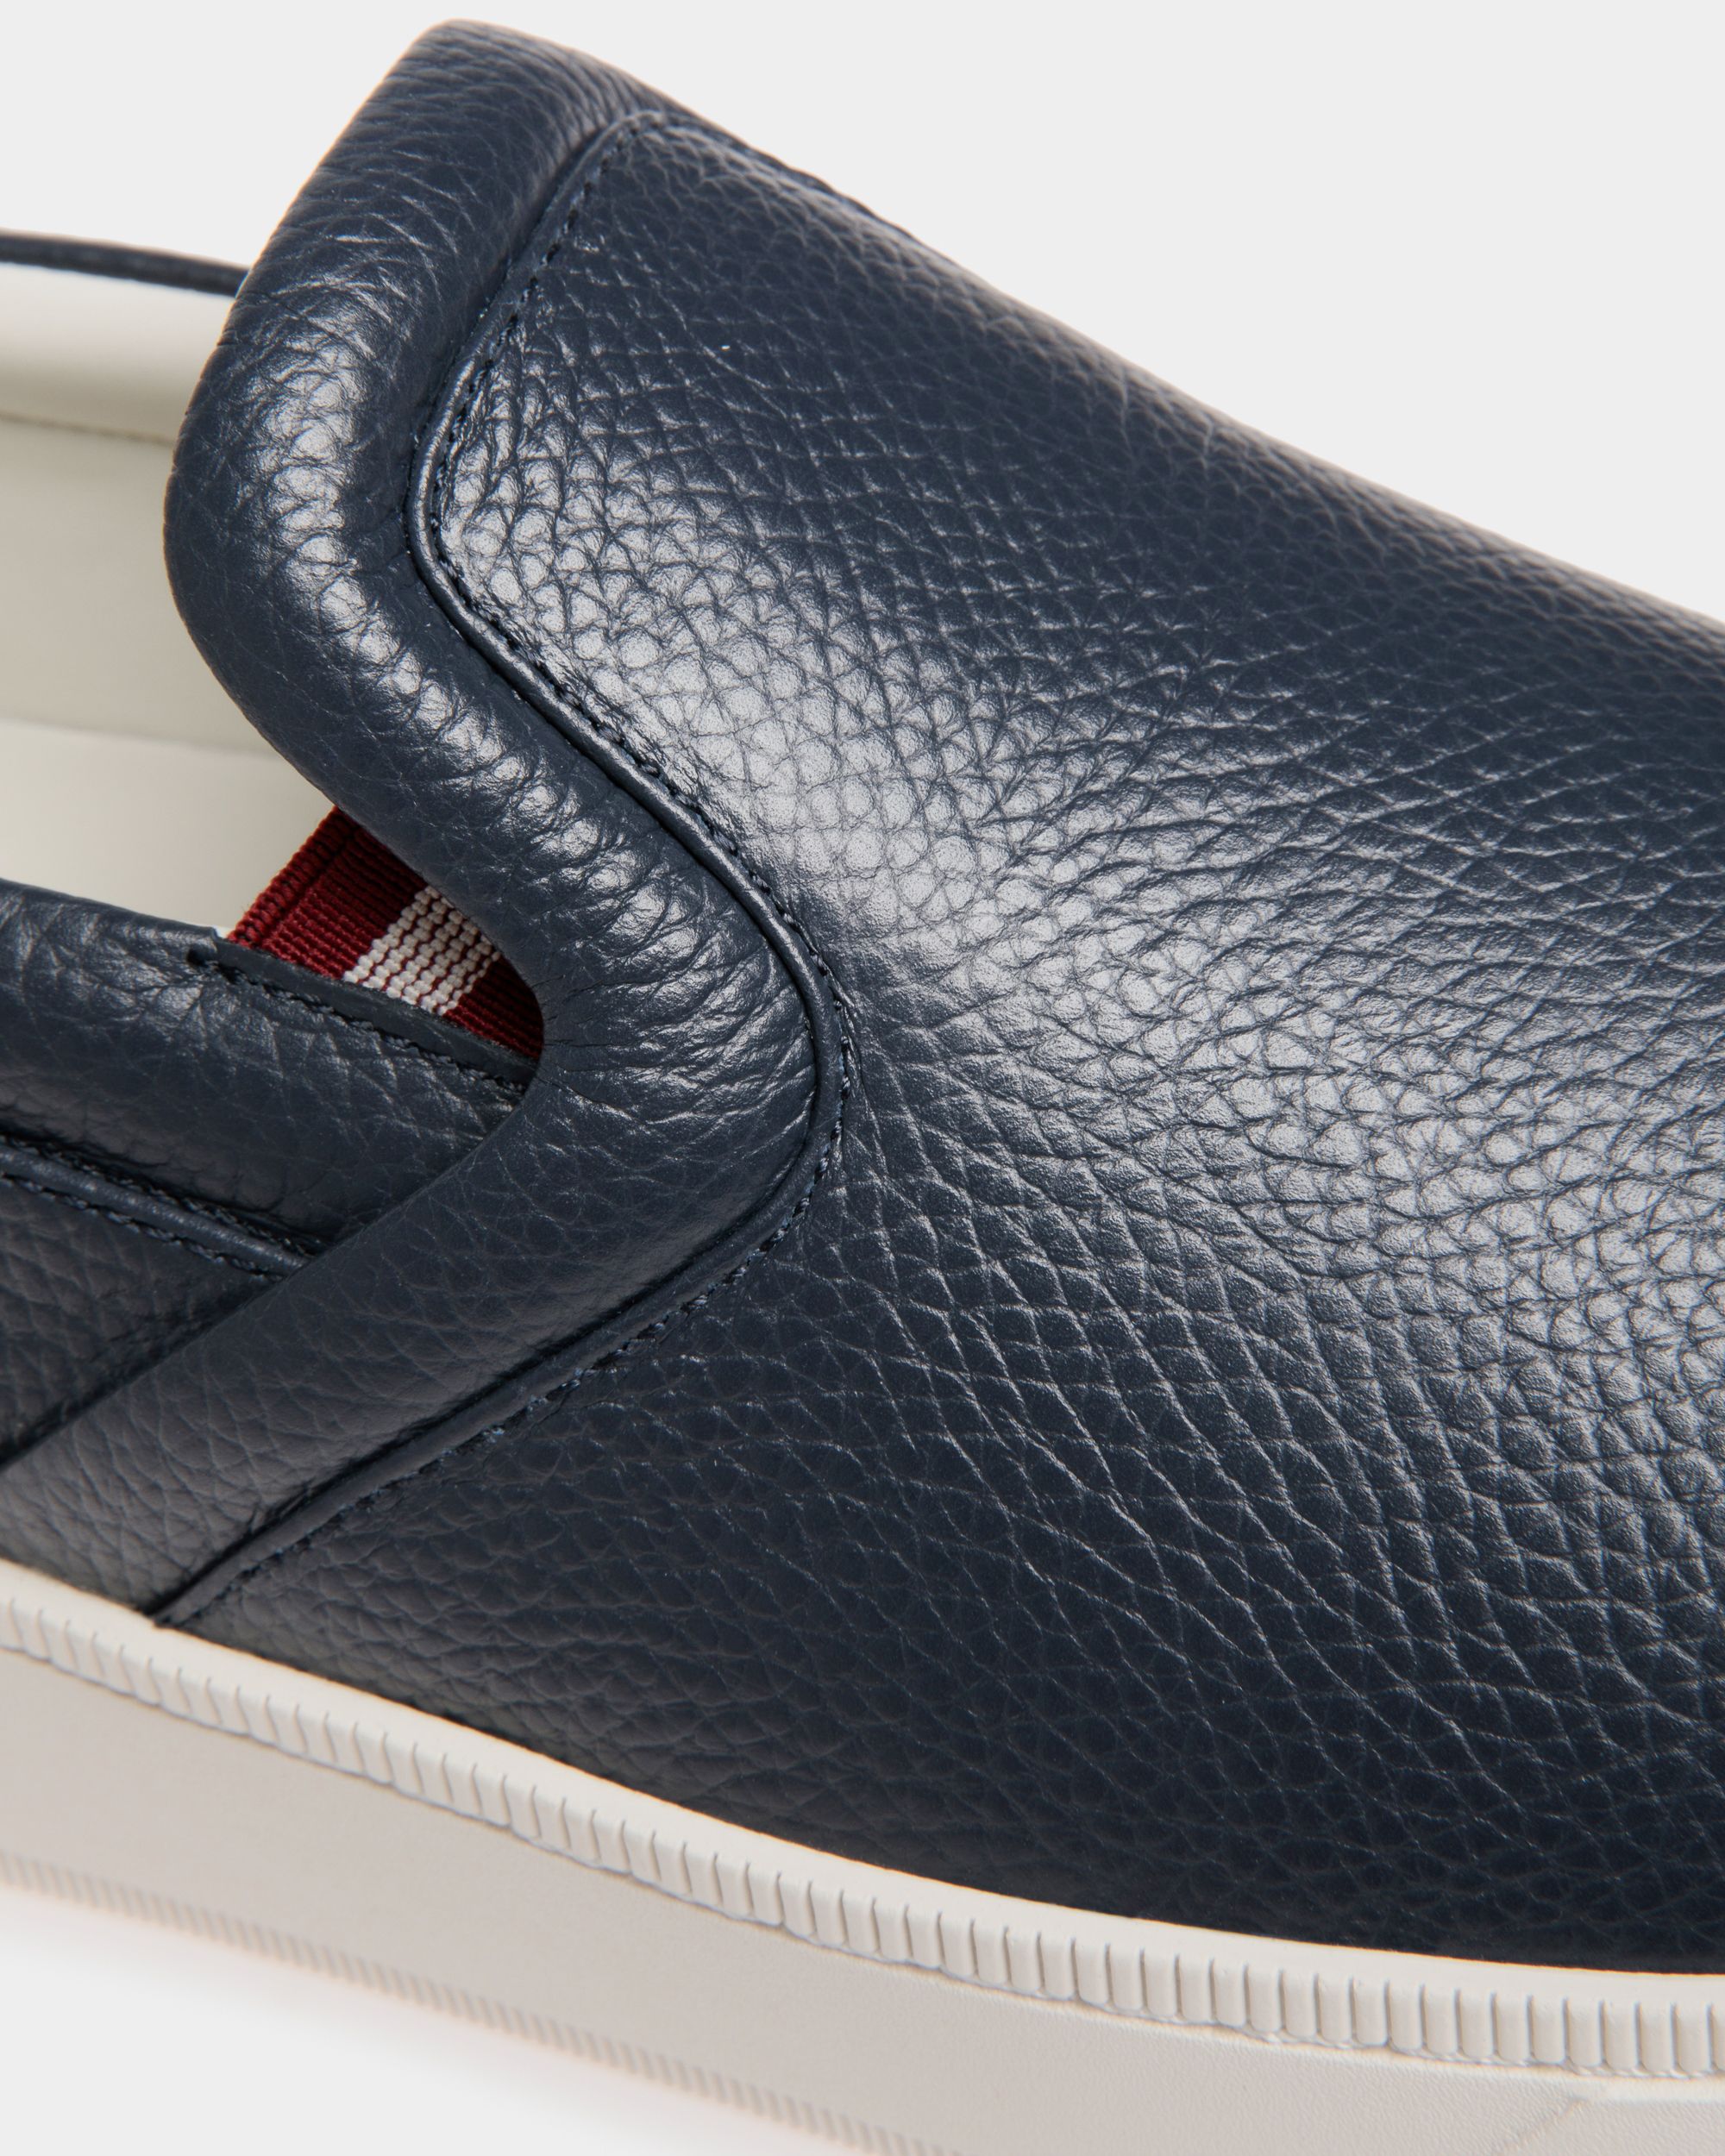 Raise | Men's Slip-On Sneaker in Blue Grained Leather | Bally | Still Life Detail